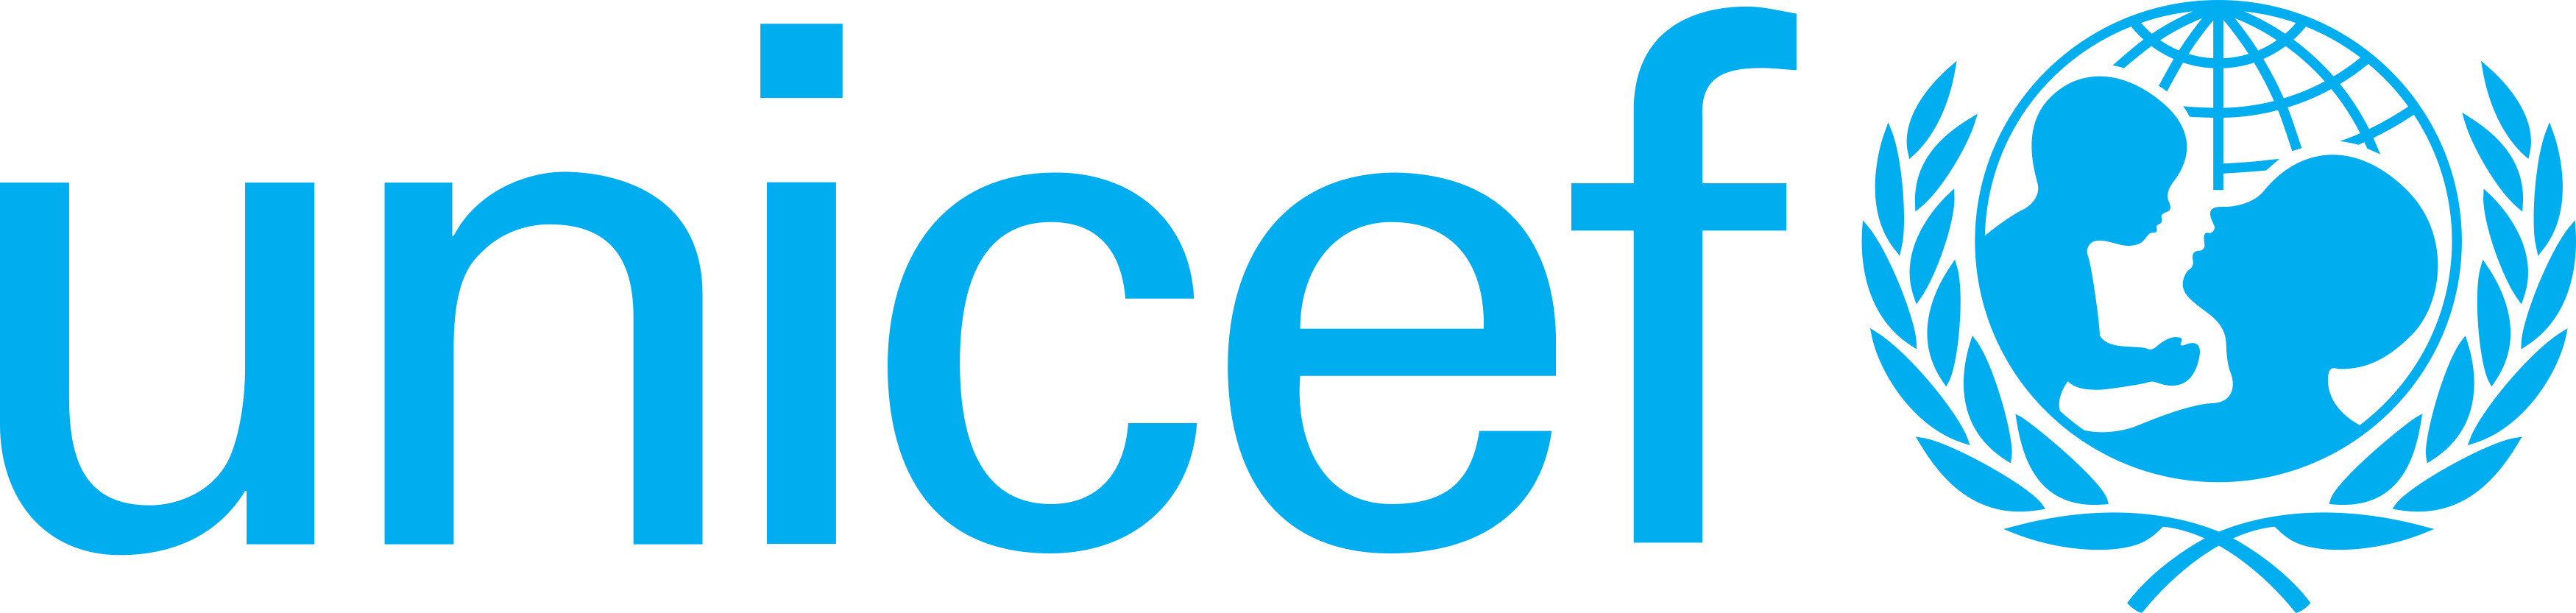 Logo de Unicef SVG